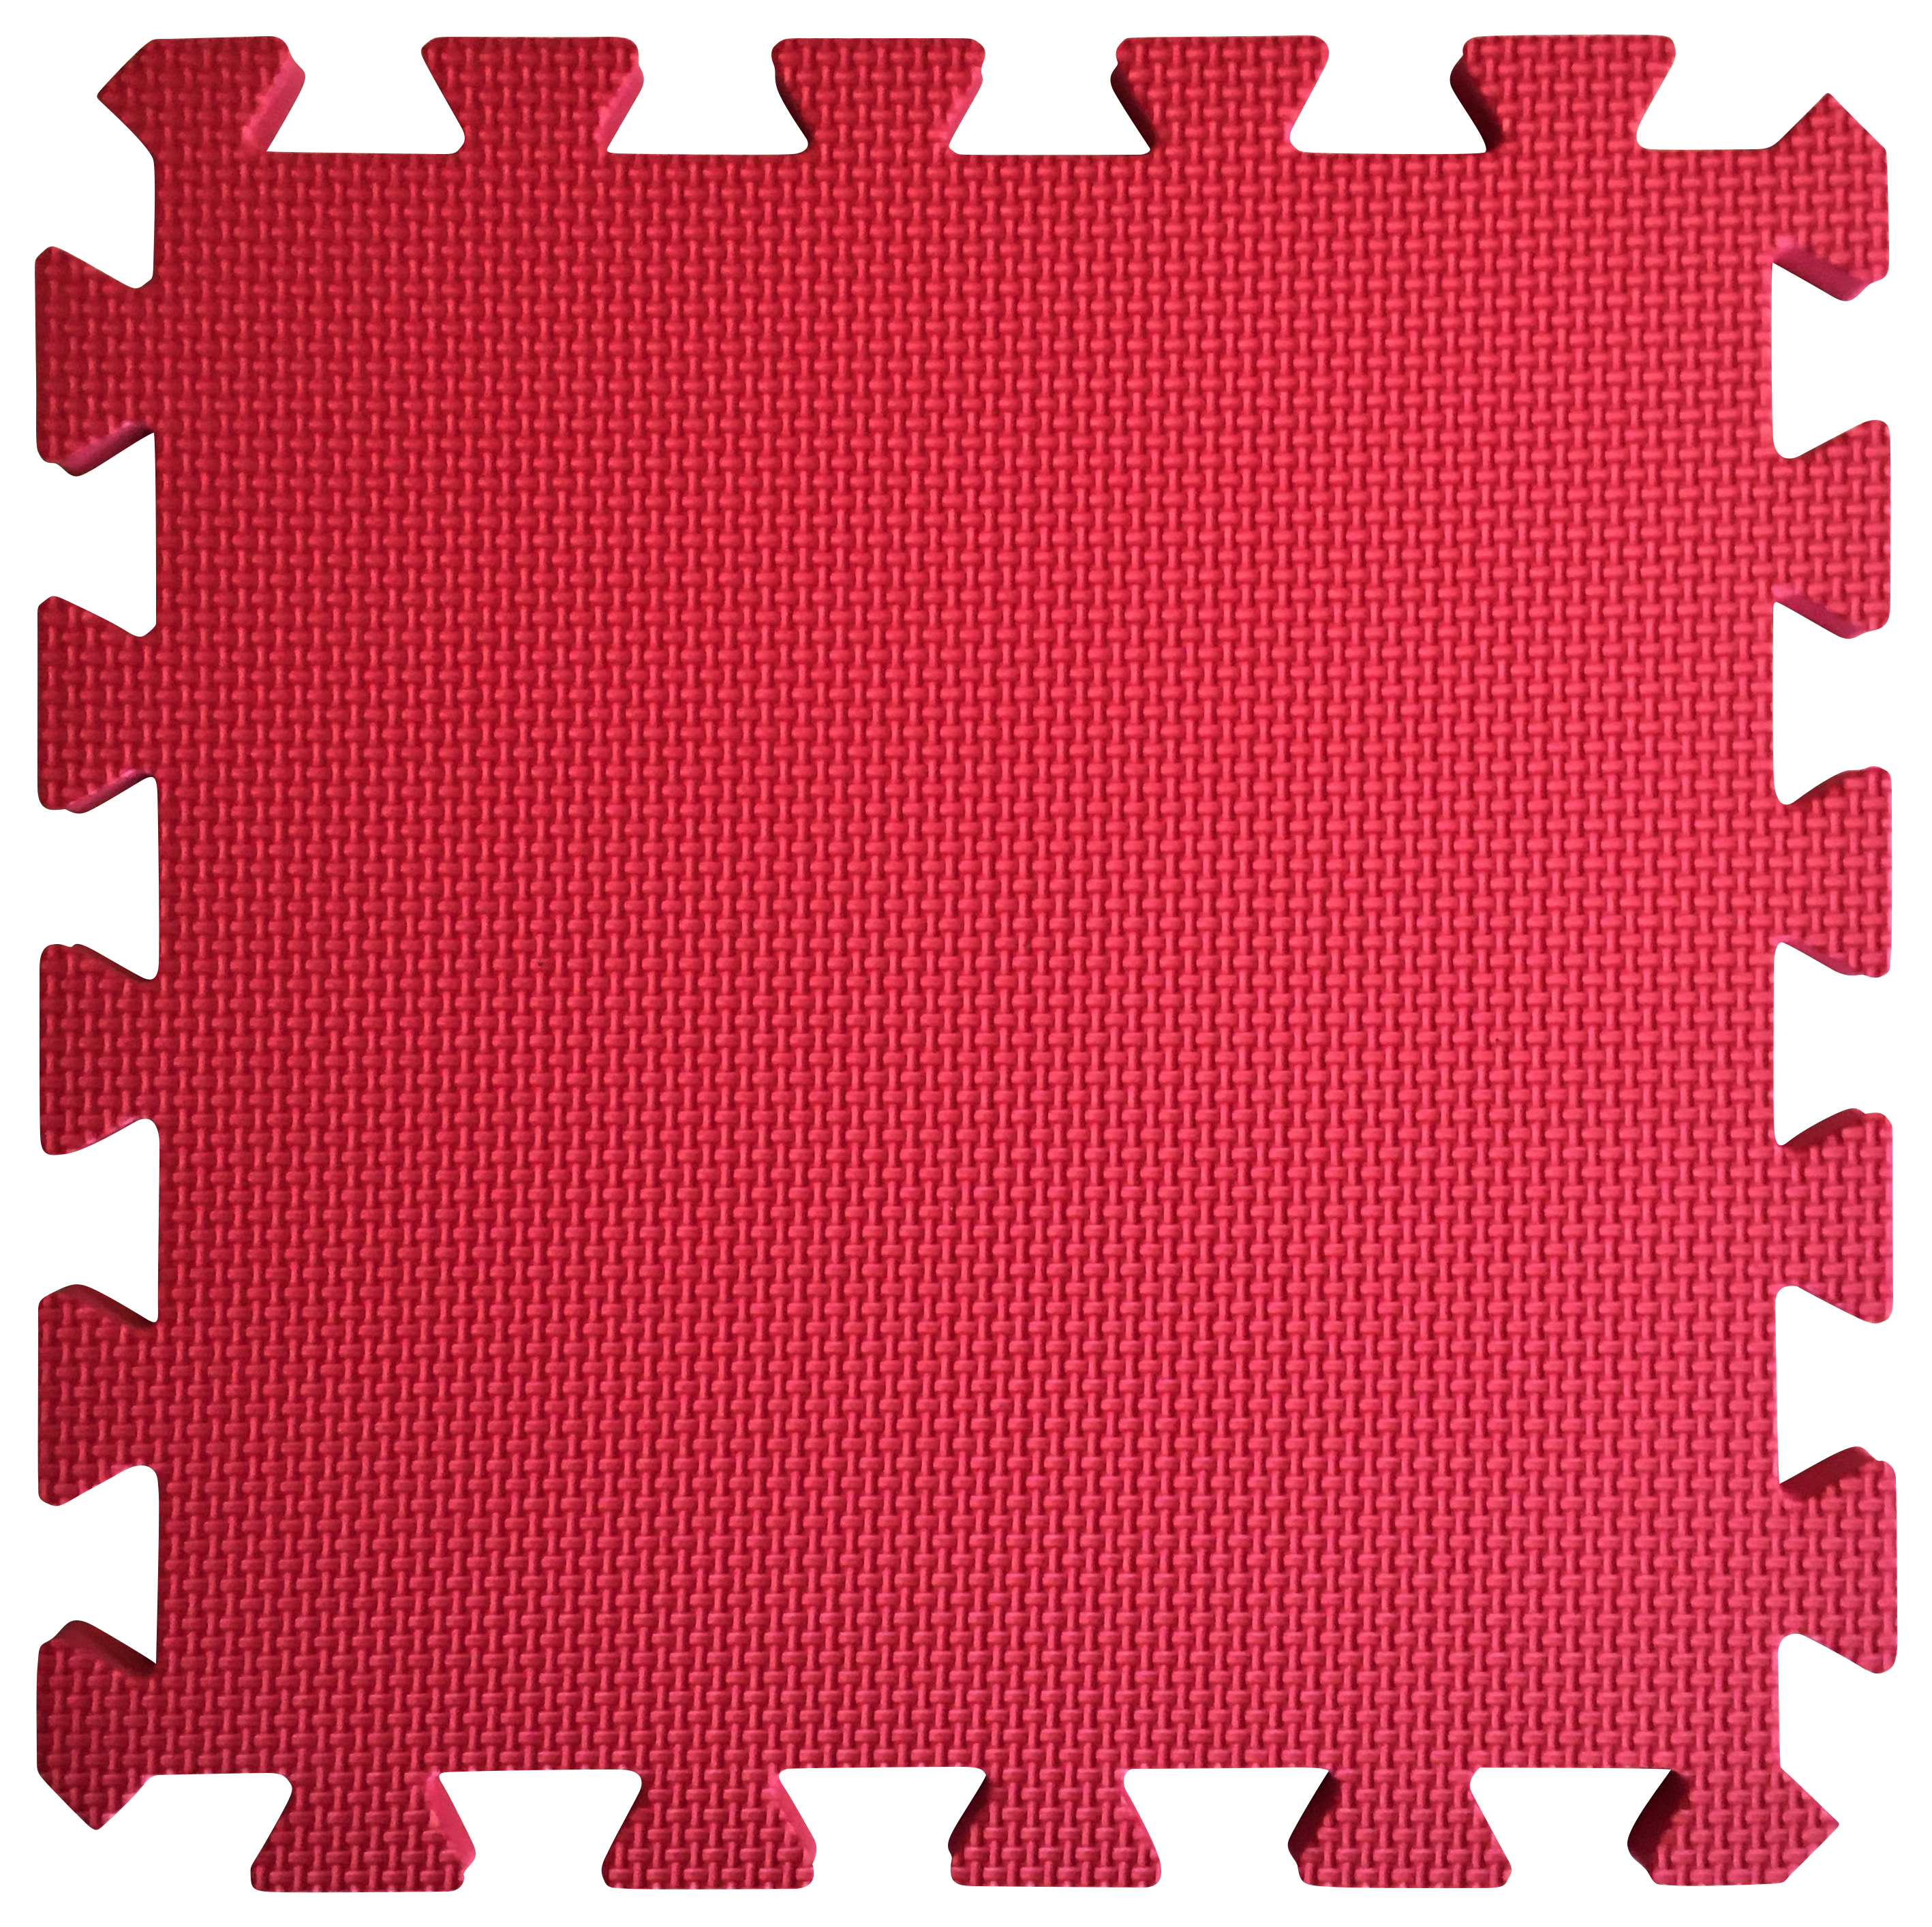 Image of Warm Floor Red Interlocking Floor Tiles for Garden Buildings - 11 x 10ft